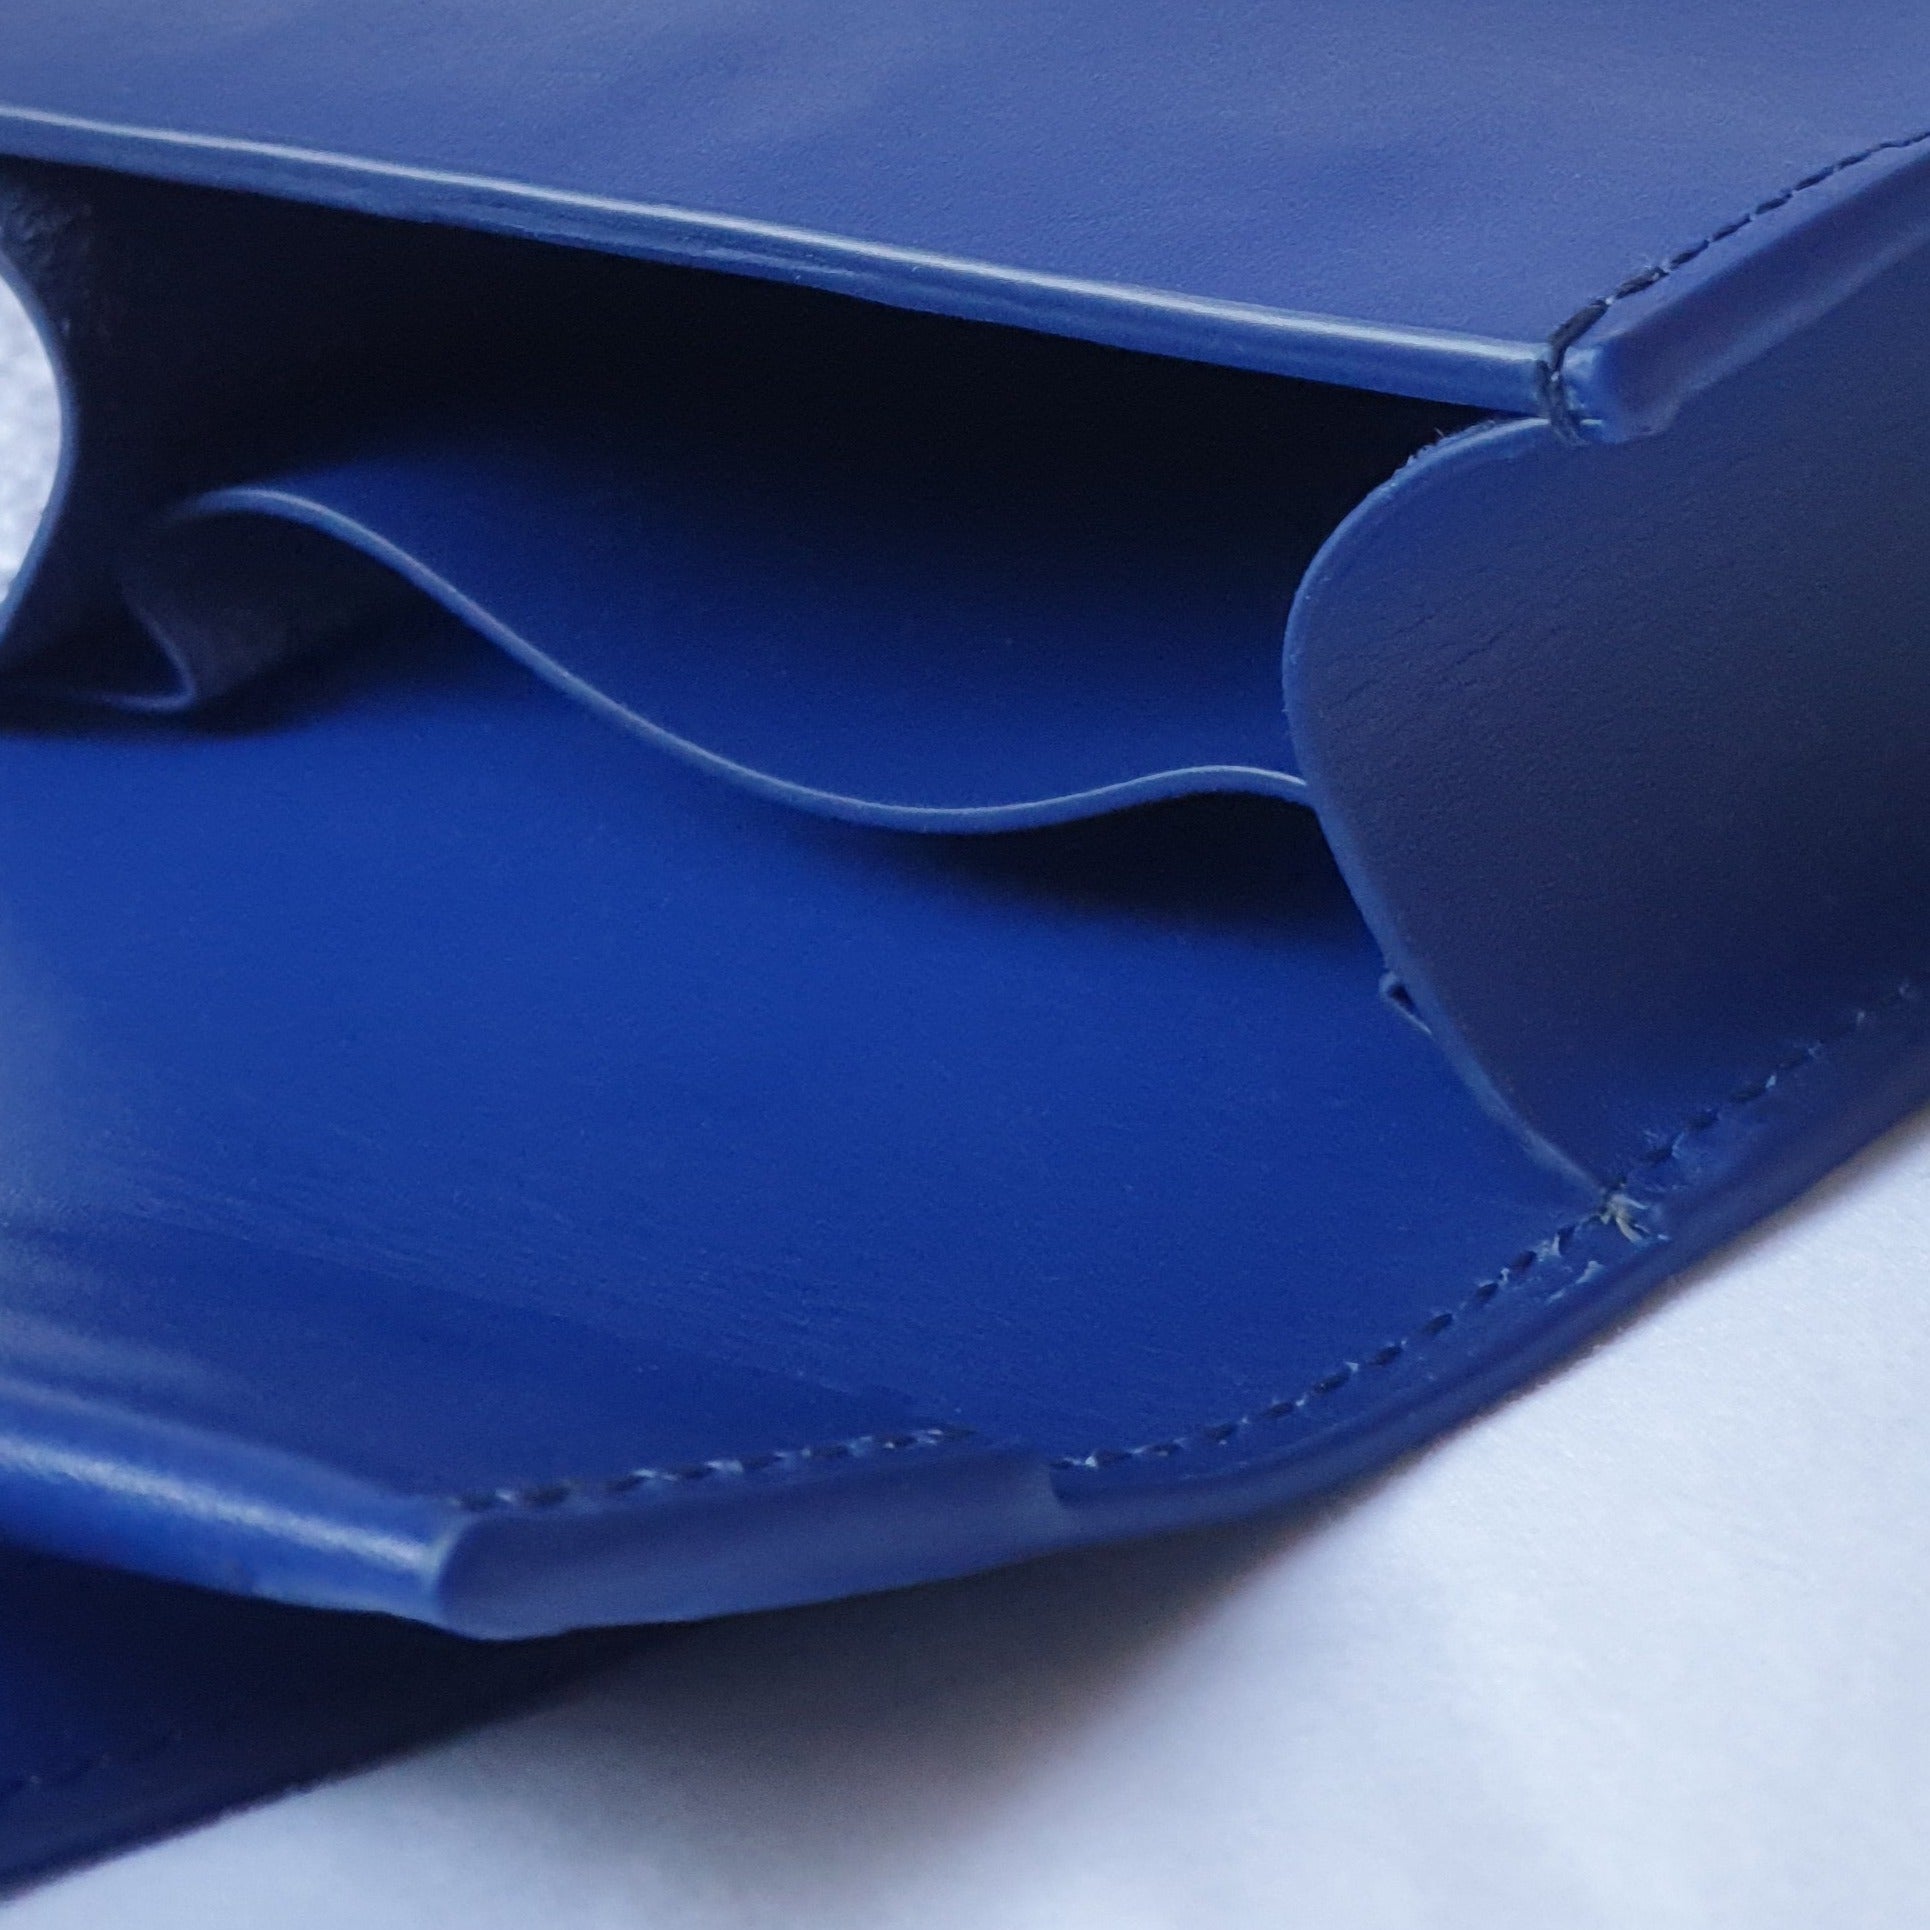 Adjustable Phone Bag in Cobalt Blue